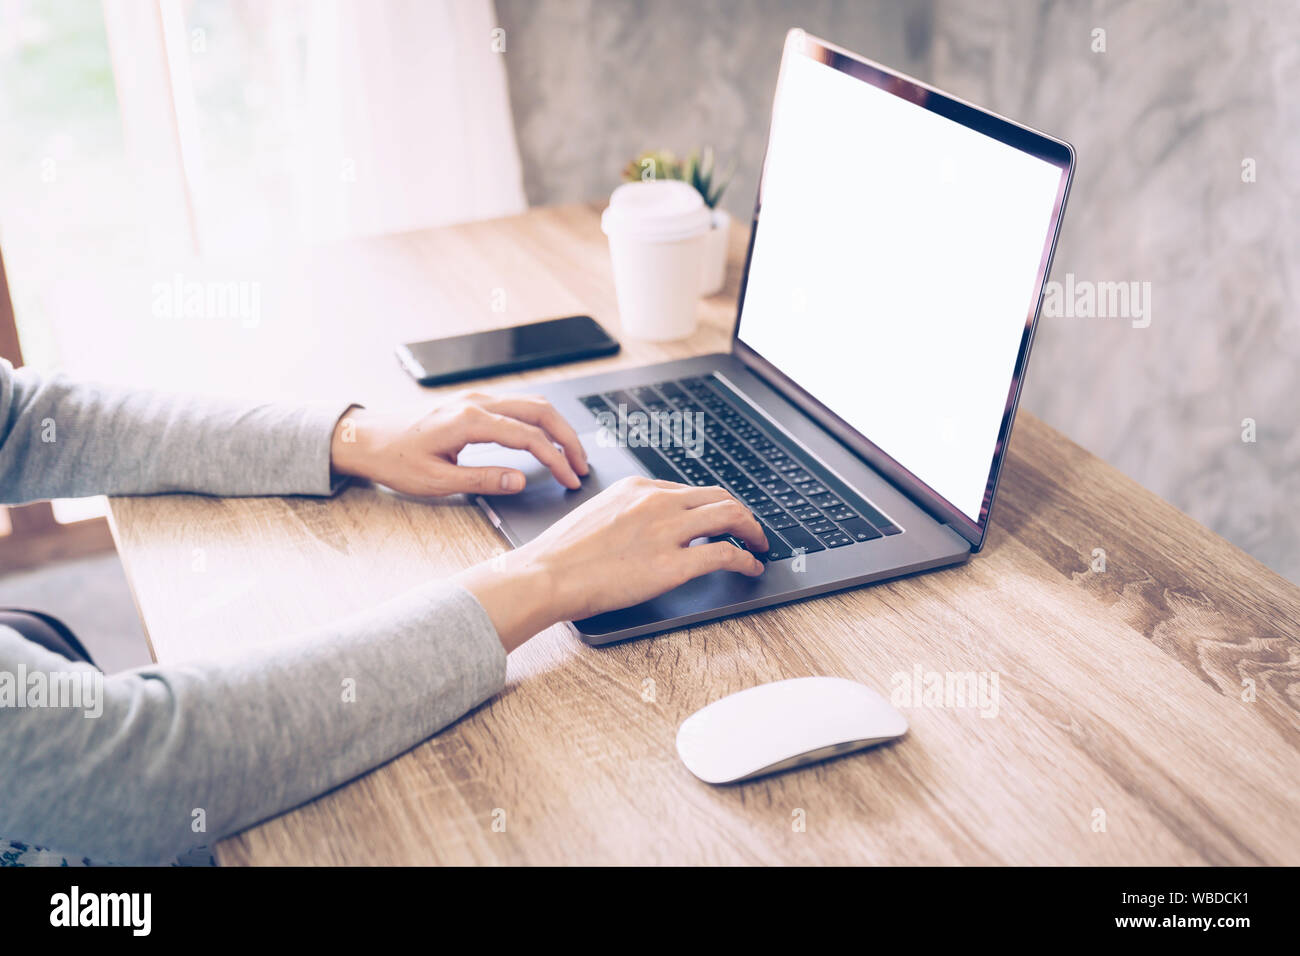 Asiatische Frau mit Computer Laptop für Arbeiten am Holztisch Stockfoto